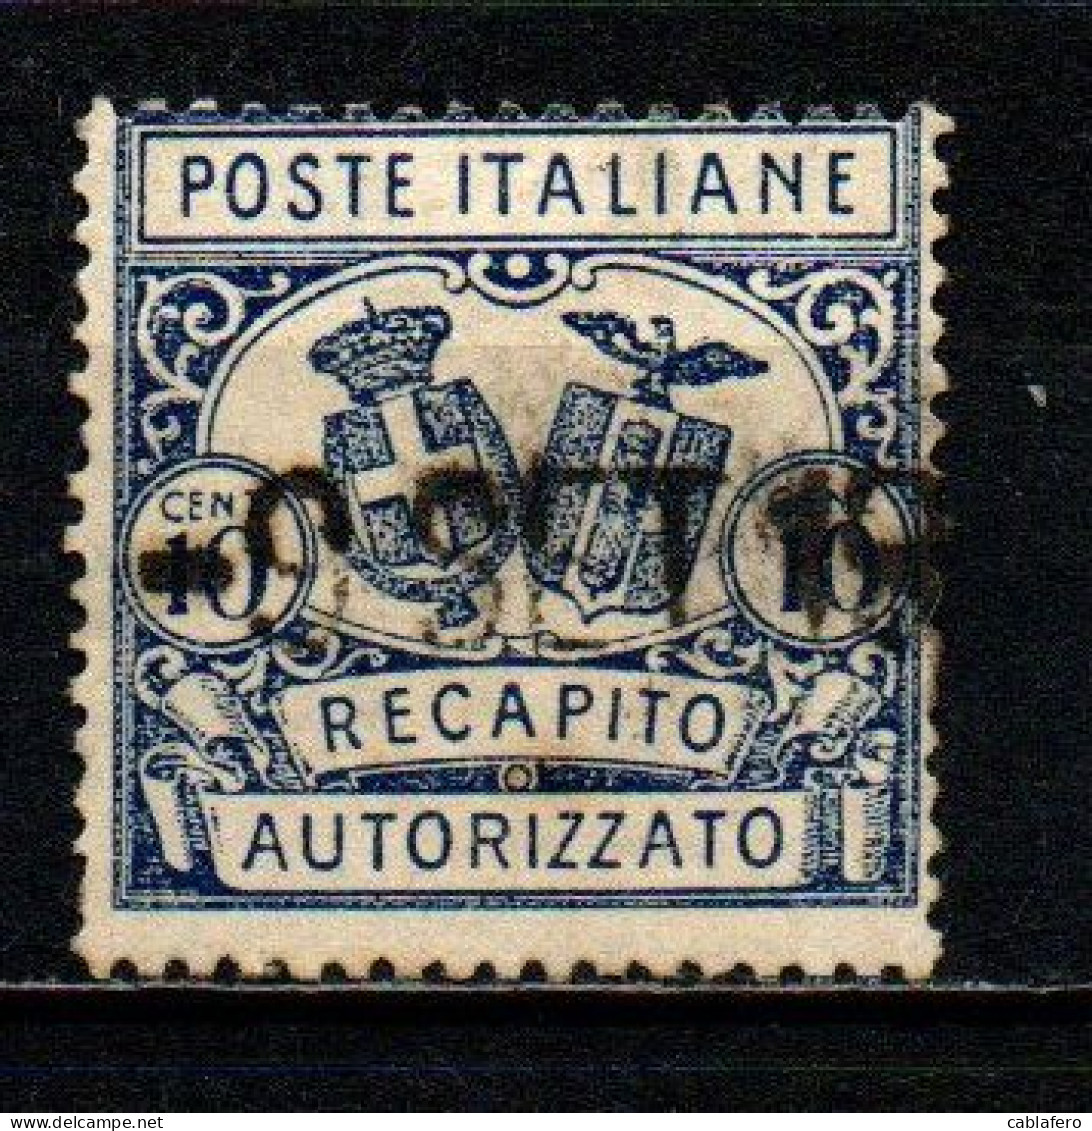 ITALIA REGNO - 1928 - RECAPITO AUTORIZZATO - STEMMI IN OVALE - DENTELLATURA 14 -  USATO - Correo Neumático